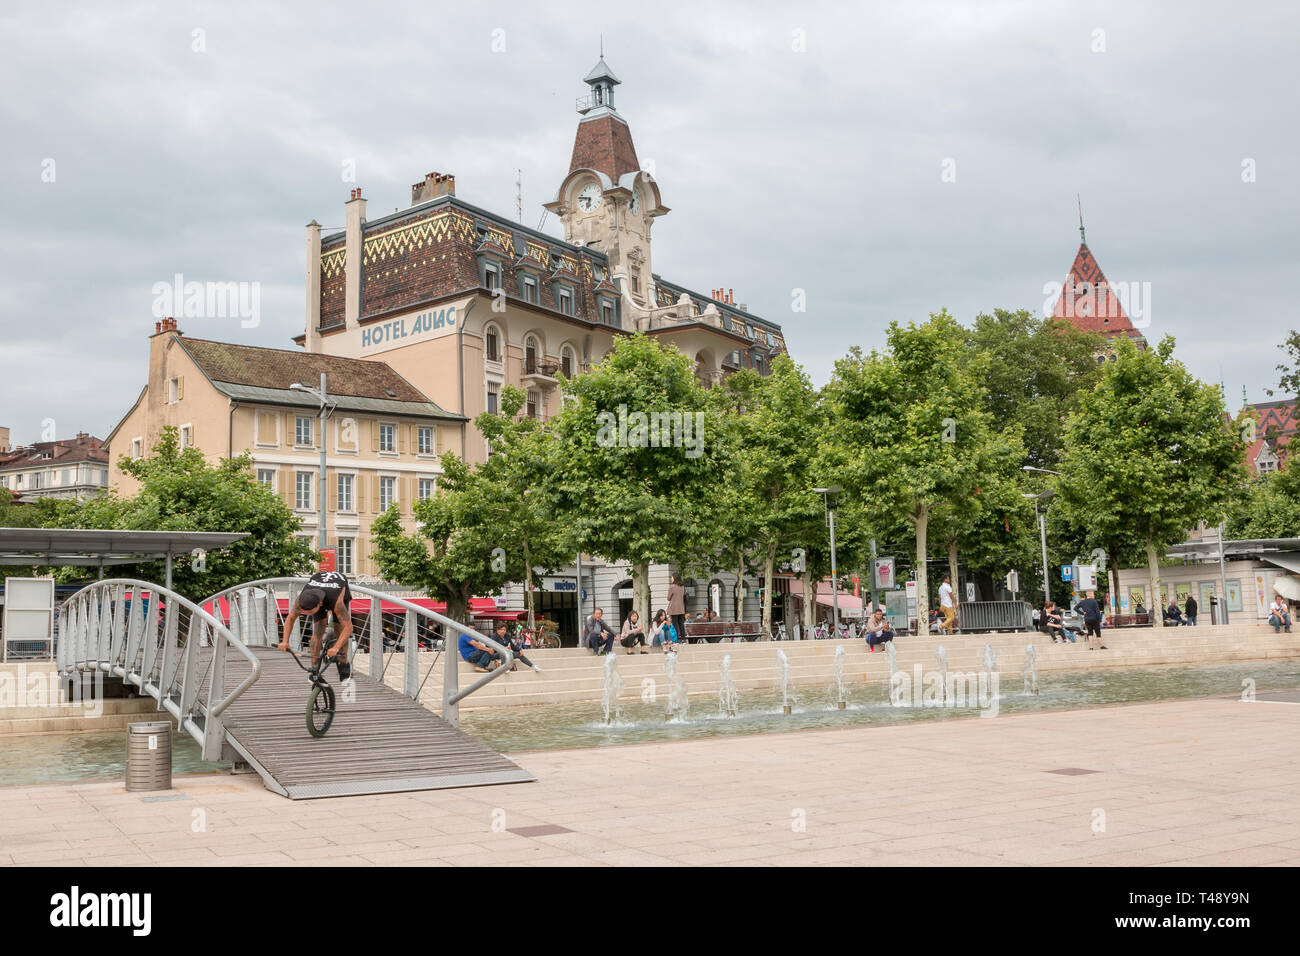 Lausanne, Schweiz - Juli 2, 2017: die Menschen am Ufer des Genfer Sees in Lausanne, Schweiz, Europa entspannen. Sommer Landschaft, Sonnenschein w Stockfoto